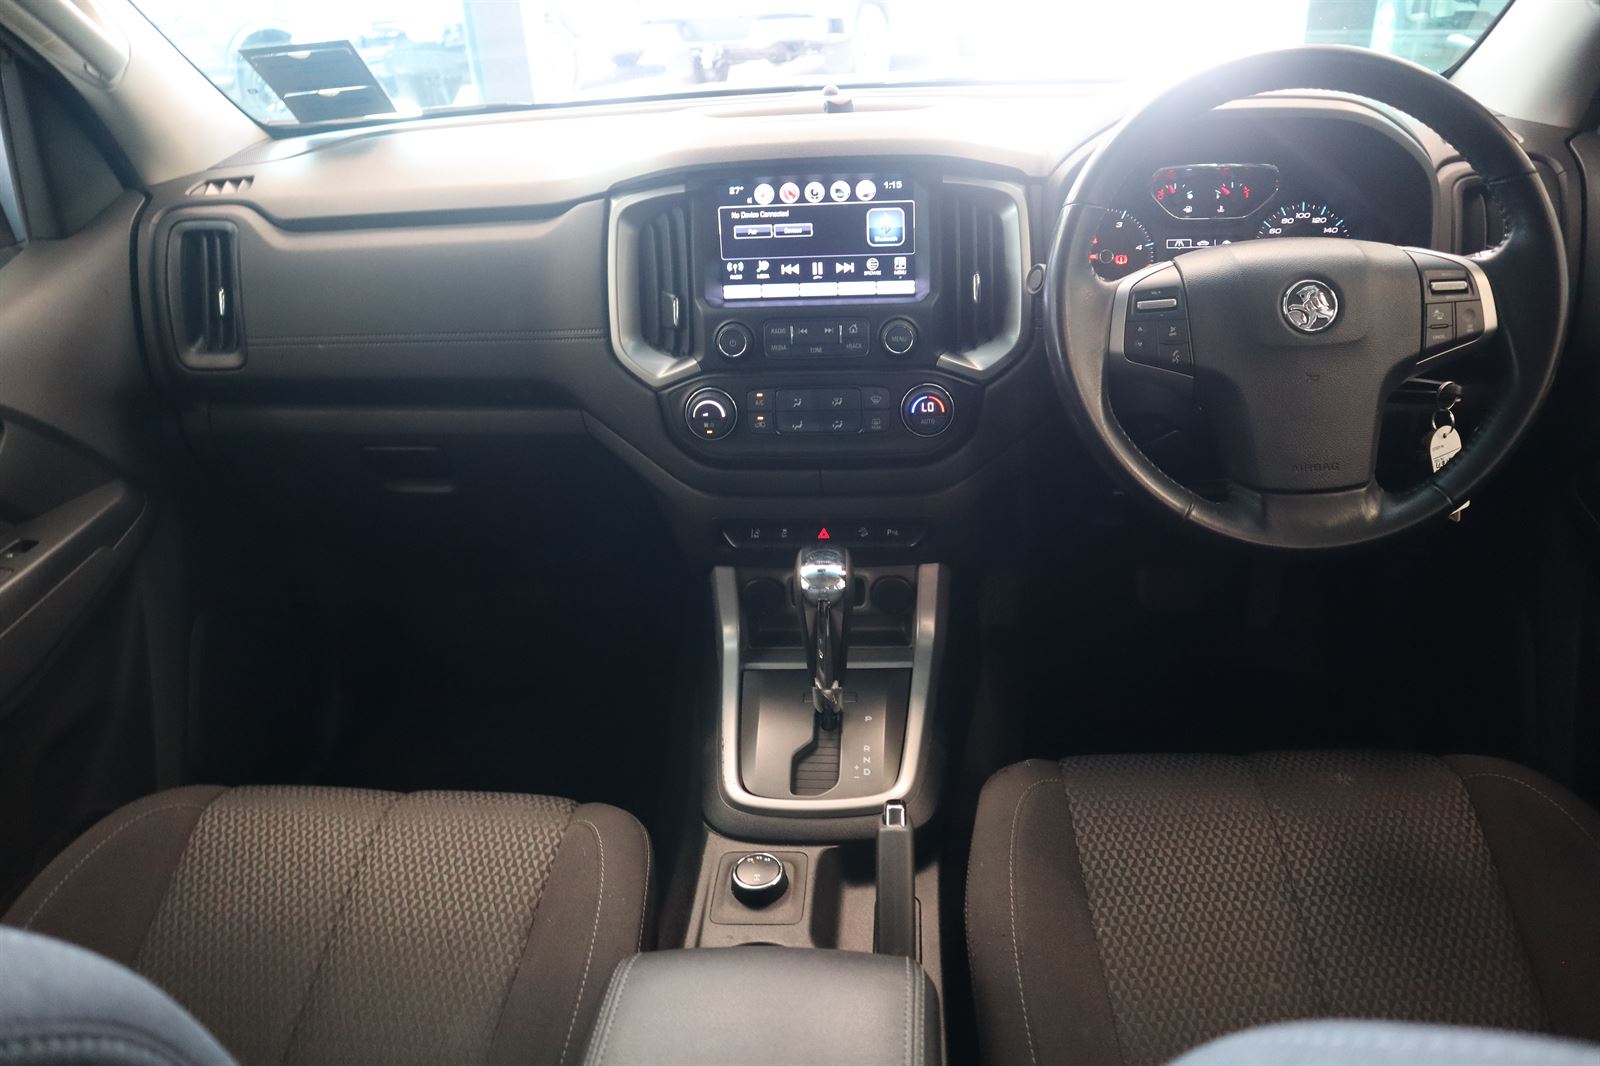 2018 Holden Colorado LTZ 4WD